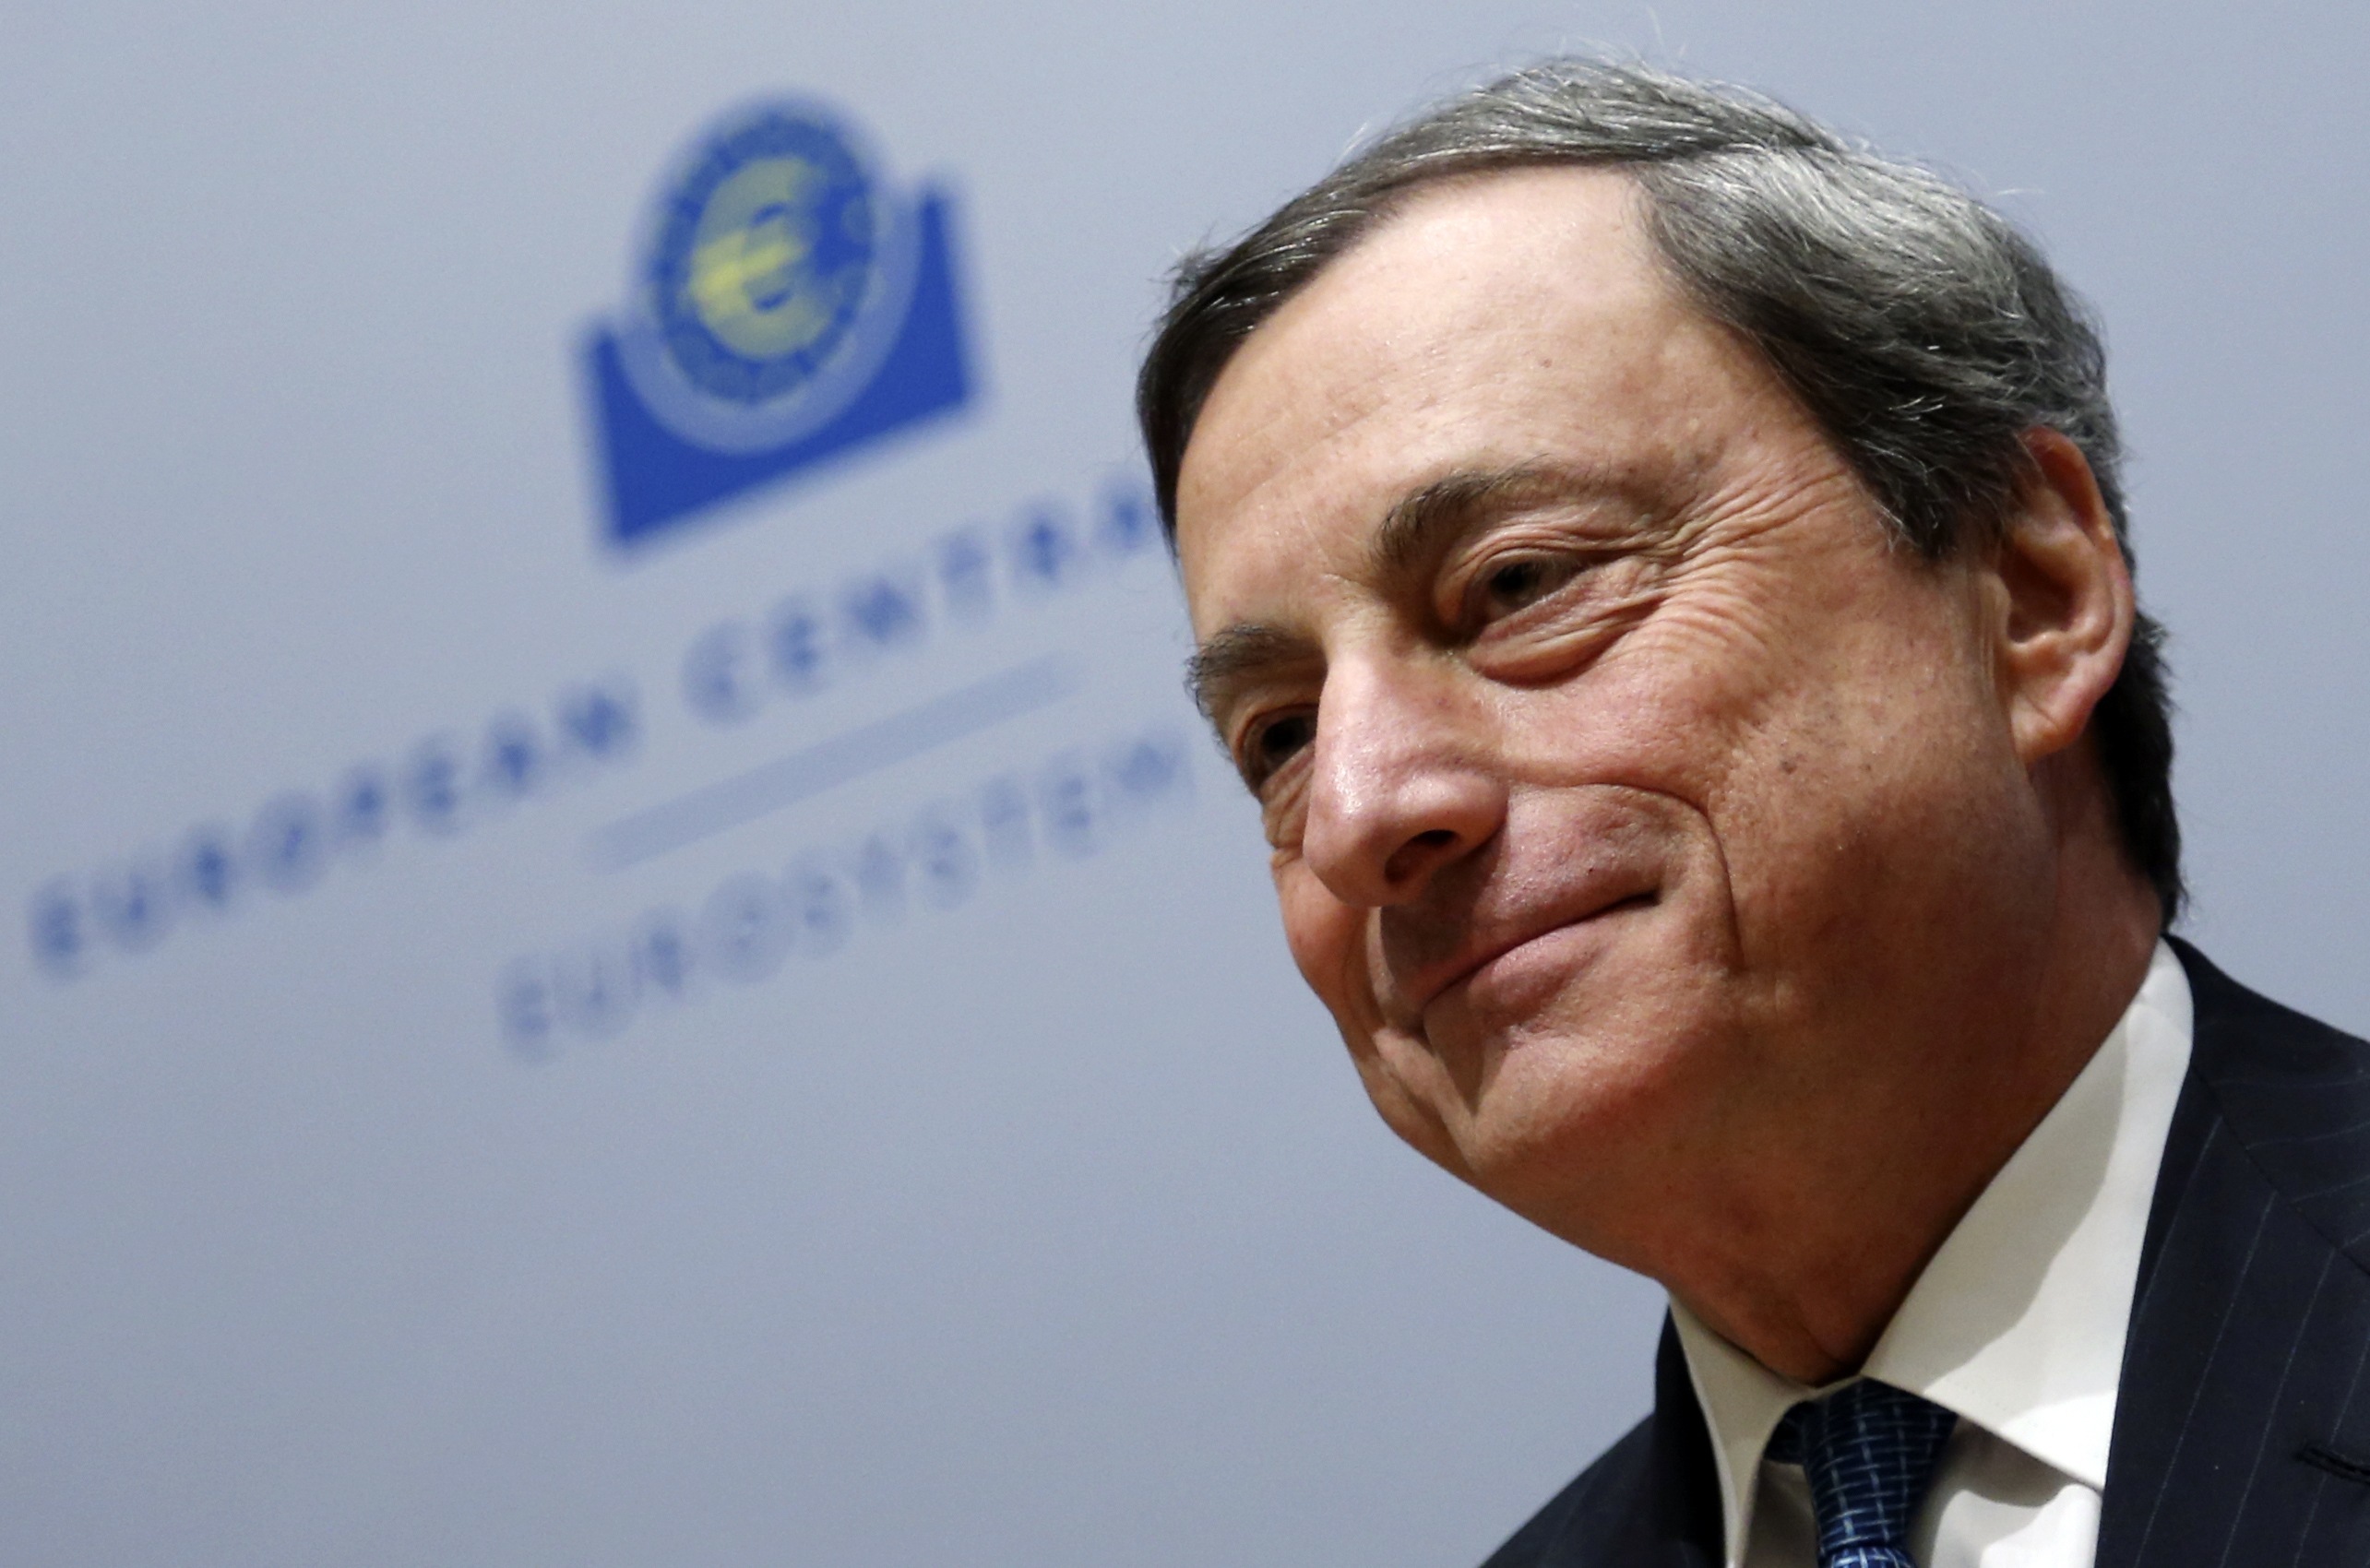 Ιστορική μείωση των επιτοκίων από την ΕΚΤ! – Στο 0,15% το βασικό επιτόκιο του ευρώ – Τι σημαίνει αυτό για όσους έχουν δάνεια!